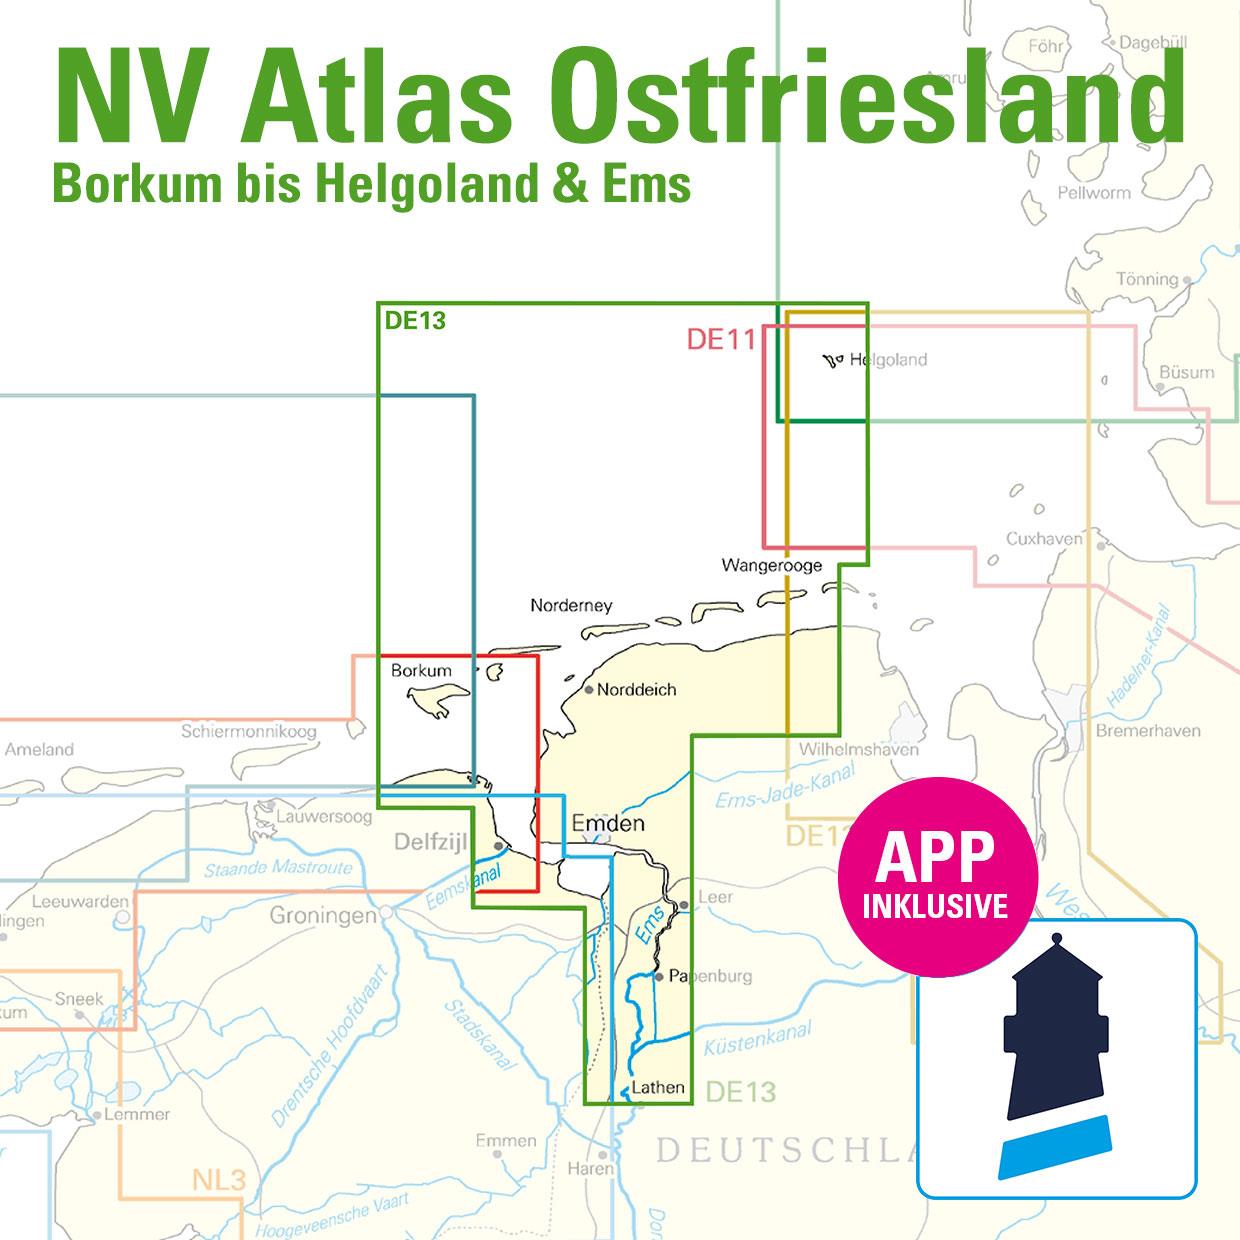 ABO - NV Atlas Ostfriesland DE13 - Borkum bis Helgoland & Ems 